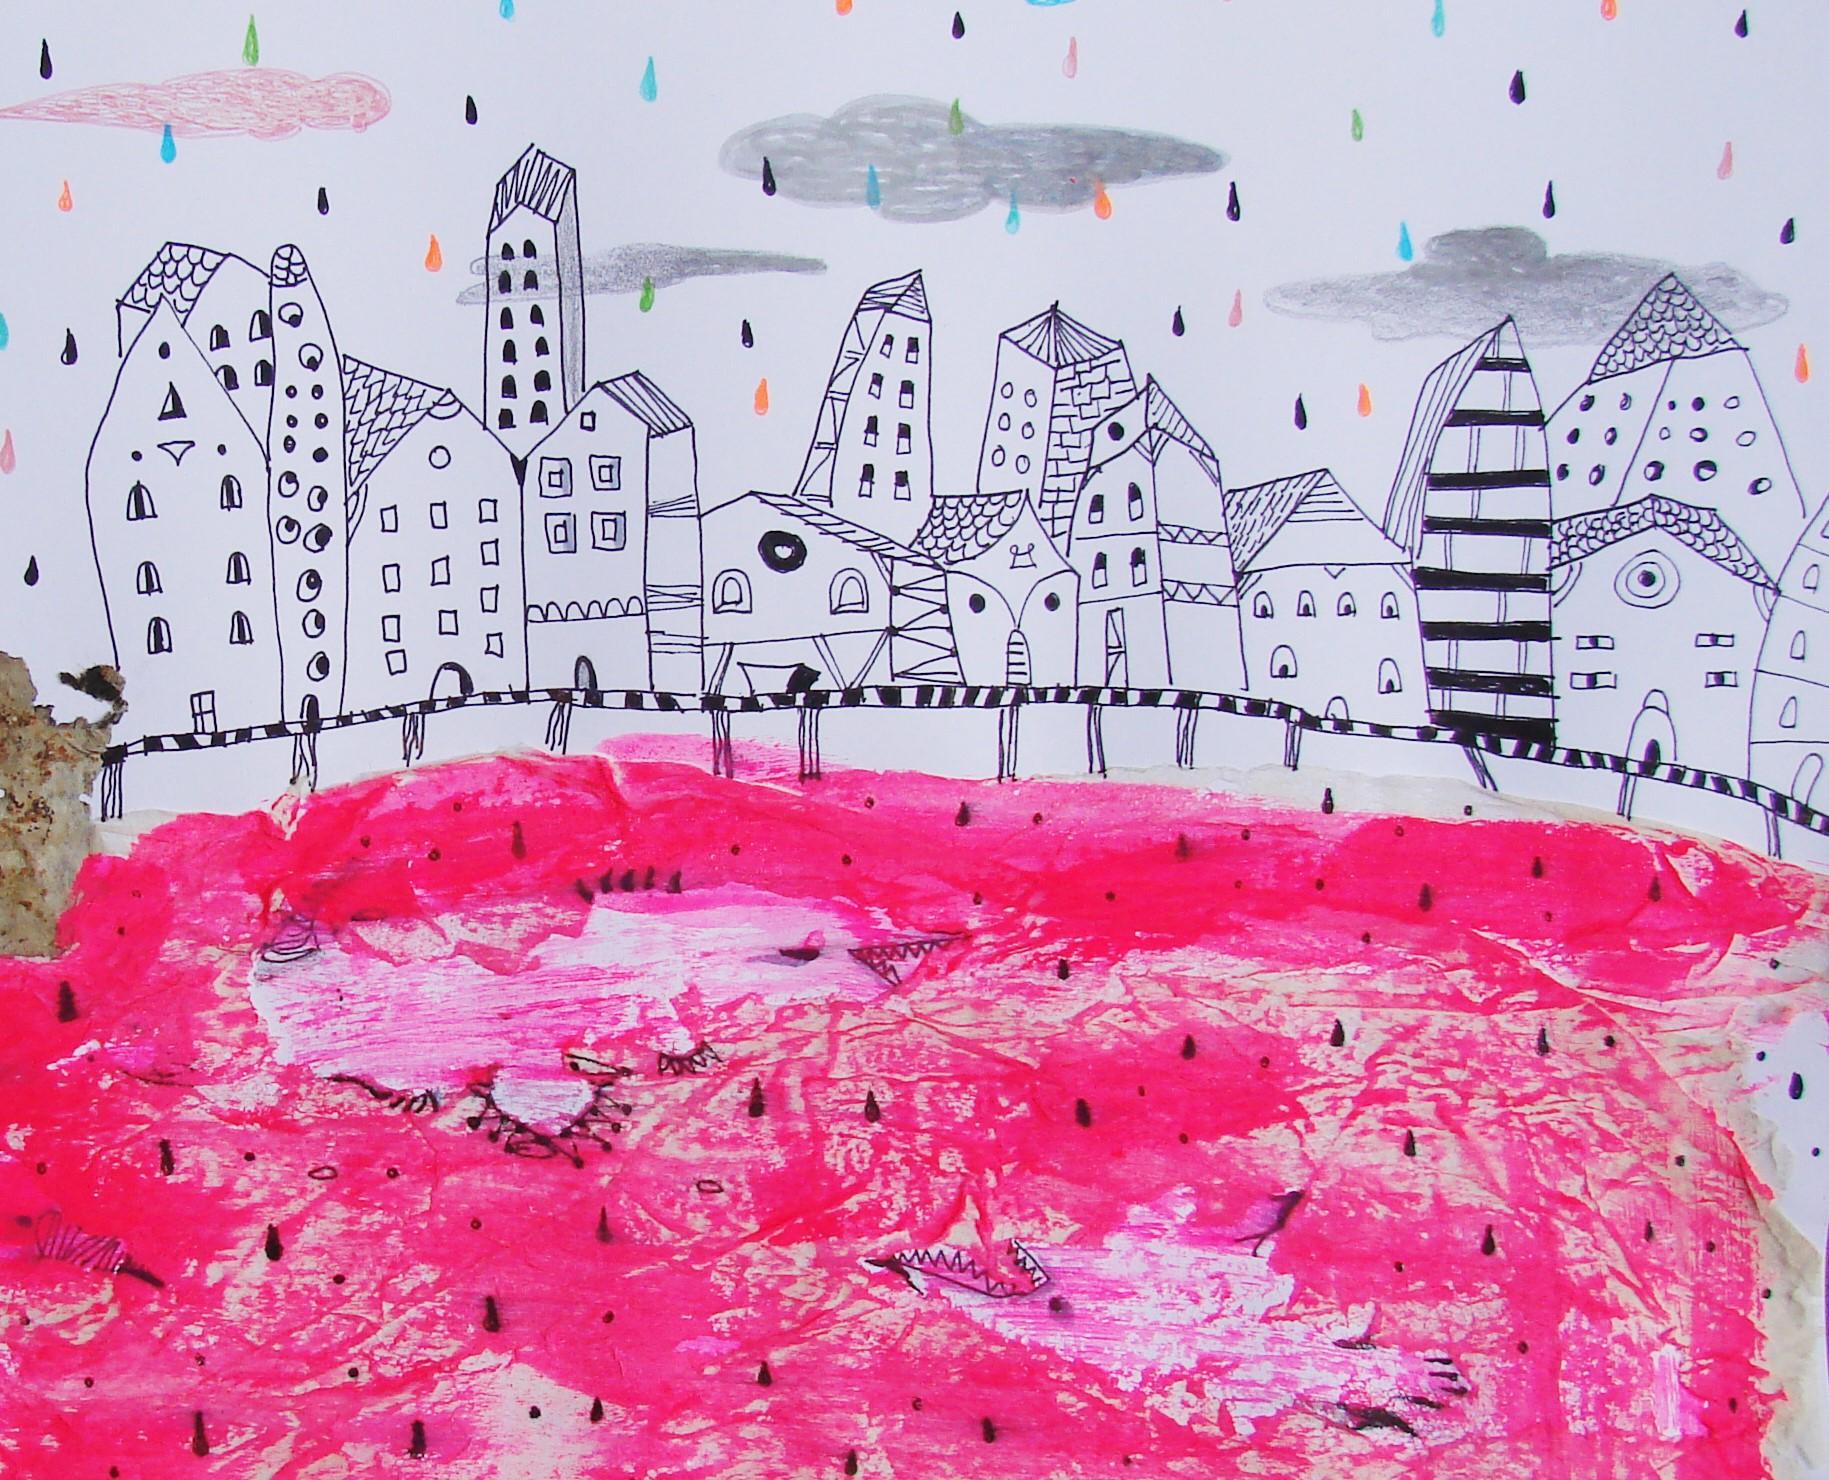 Dessins sur papier représentant la mer rouge - Contemporain, rose, onirique, figuratif - Violet Animal Art par Raluca Arnăutu